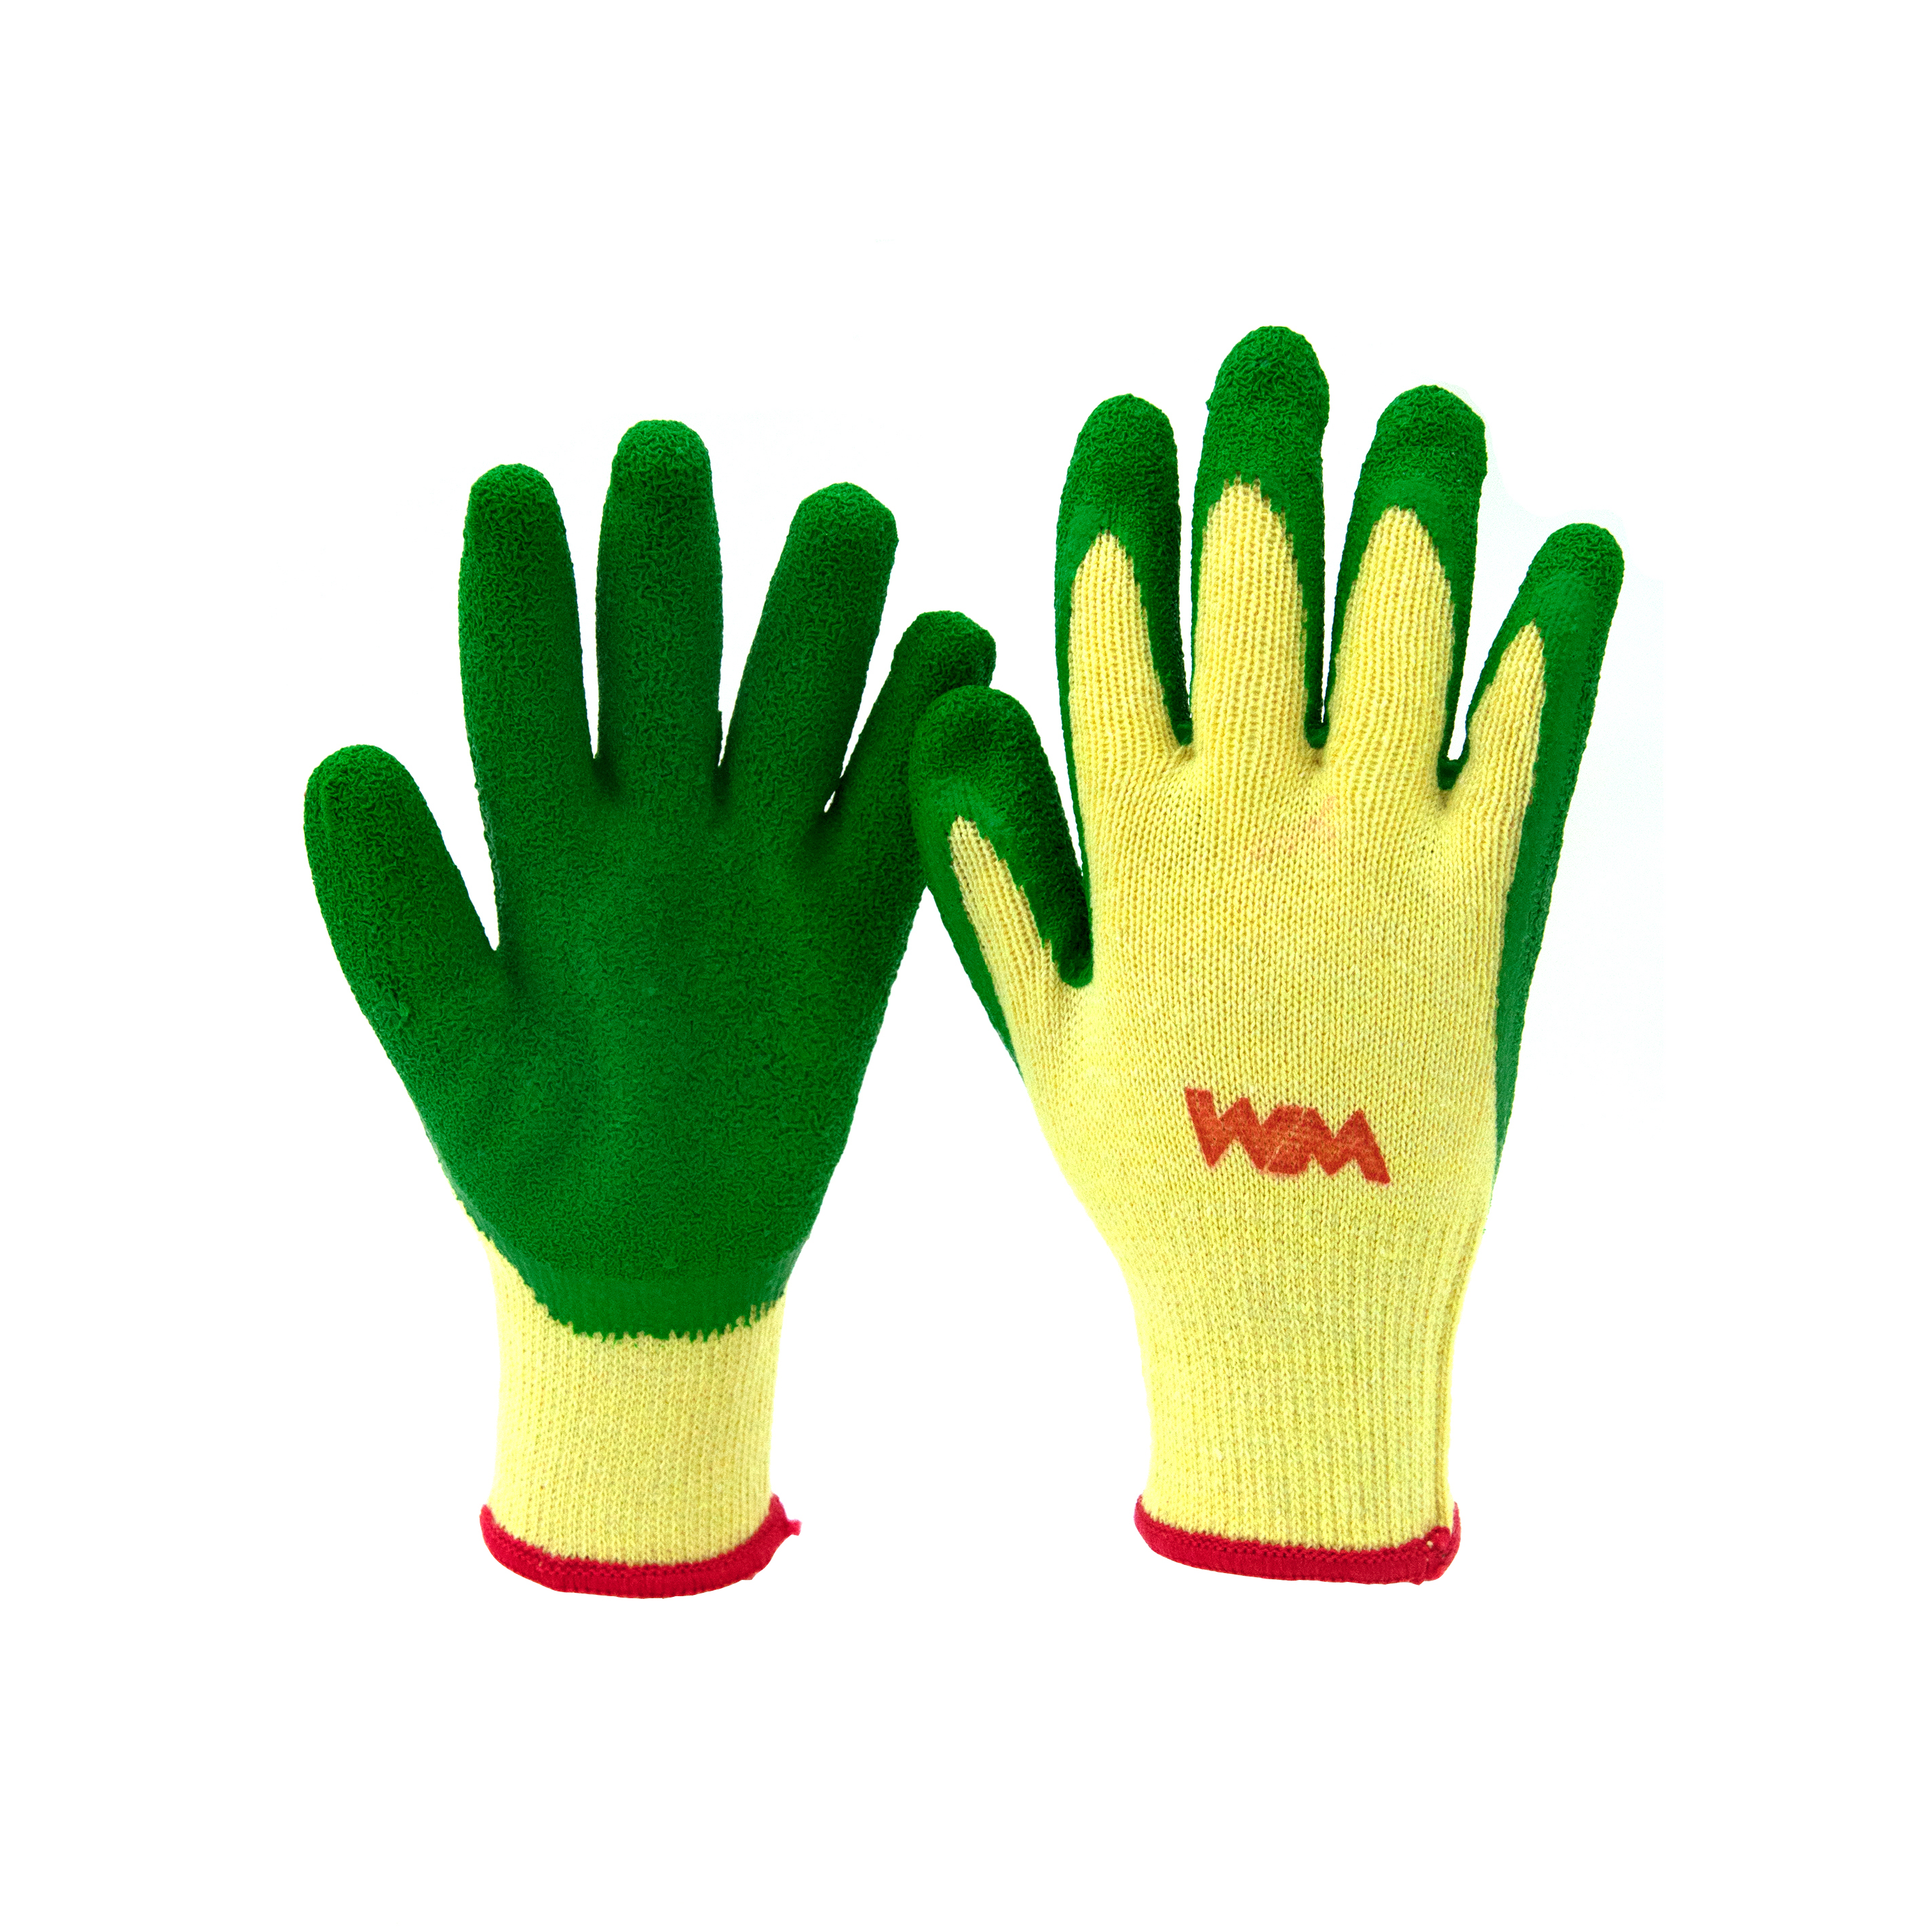 WM Shrink Rubber Coated Glove (Green)